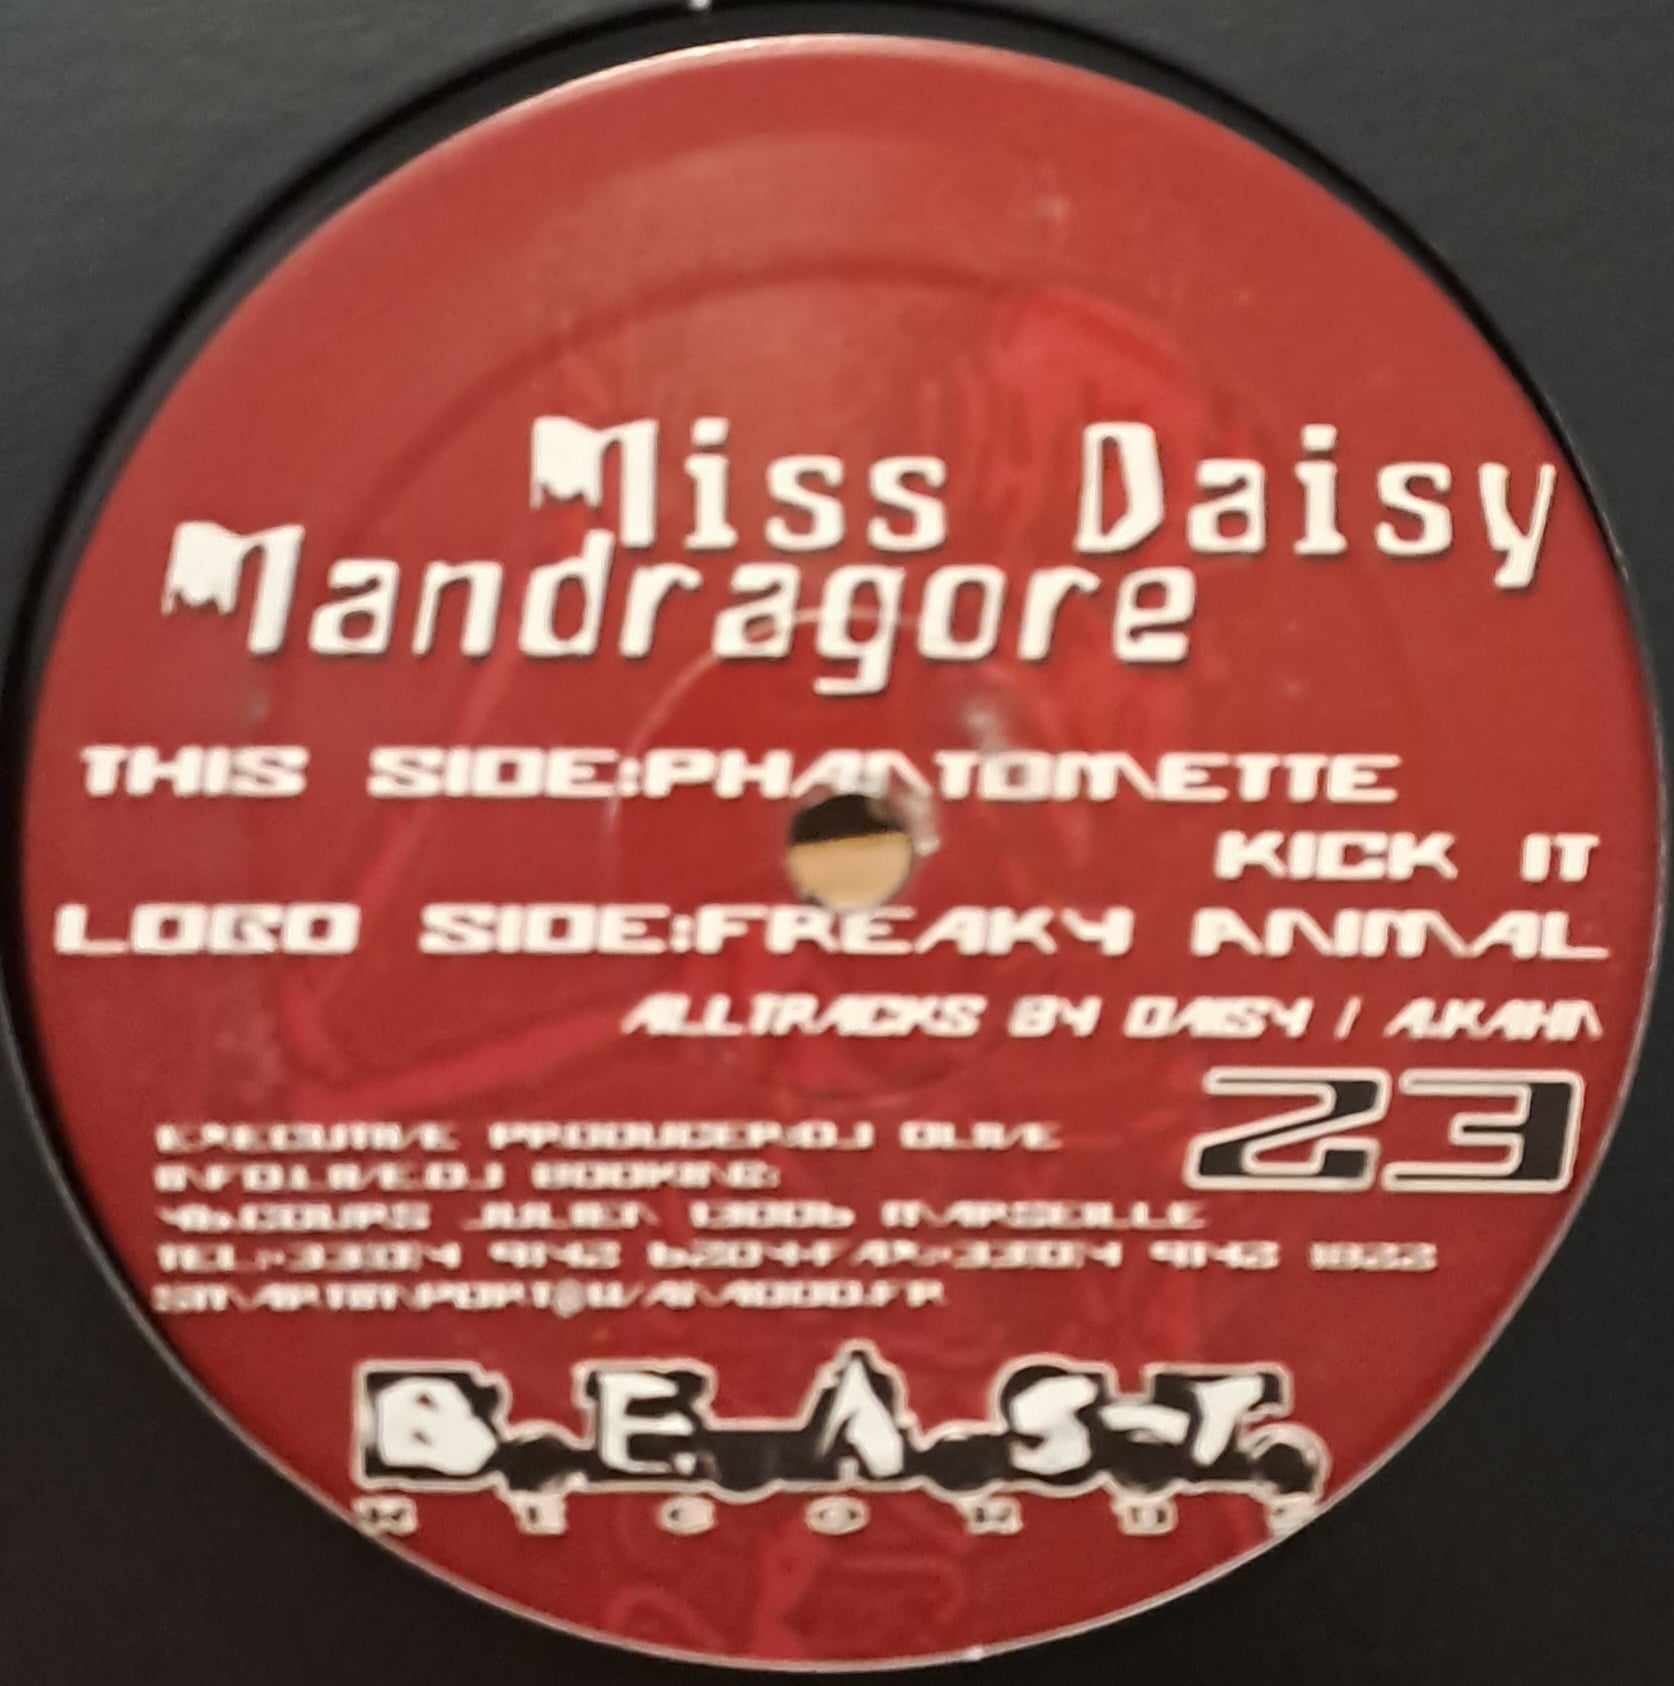 B.E.A.S.T. 23 - vinyle hardcore